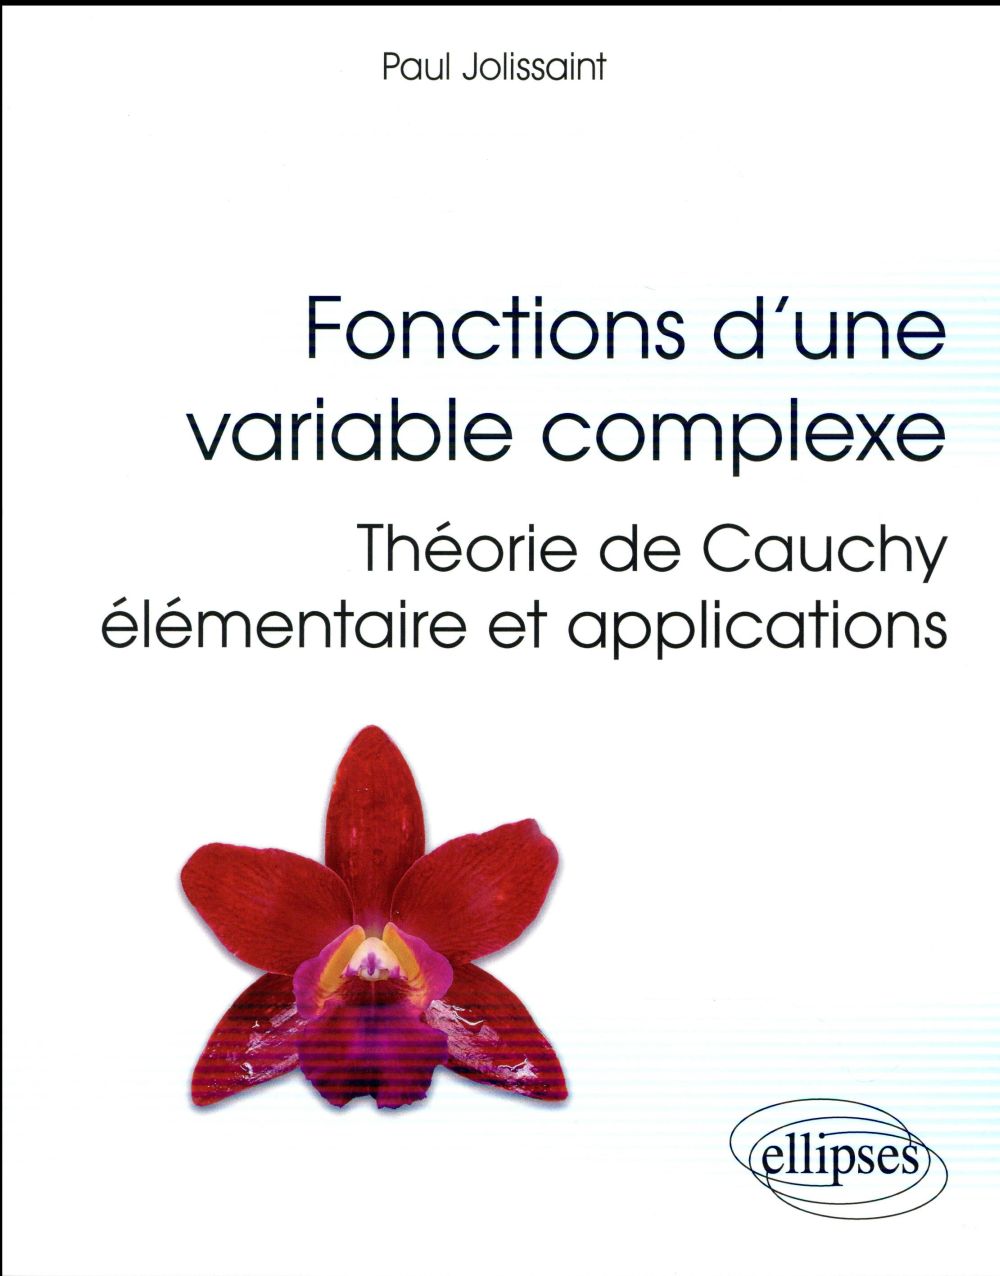 FONCTIONS D'UNE VARIABLE COMPLEXE - THEORIE DE CAUCHY ELEMENTAIRE ET APPLICATIONS